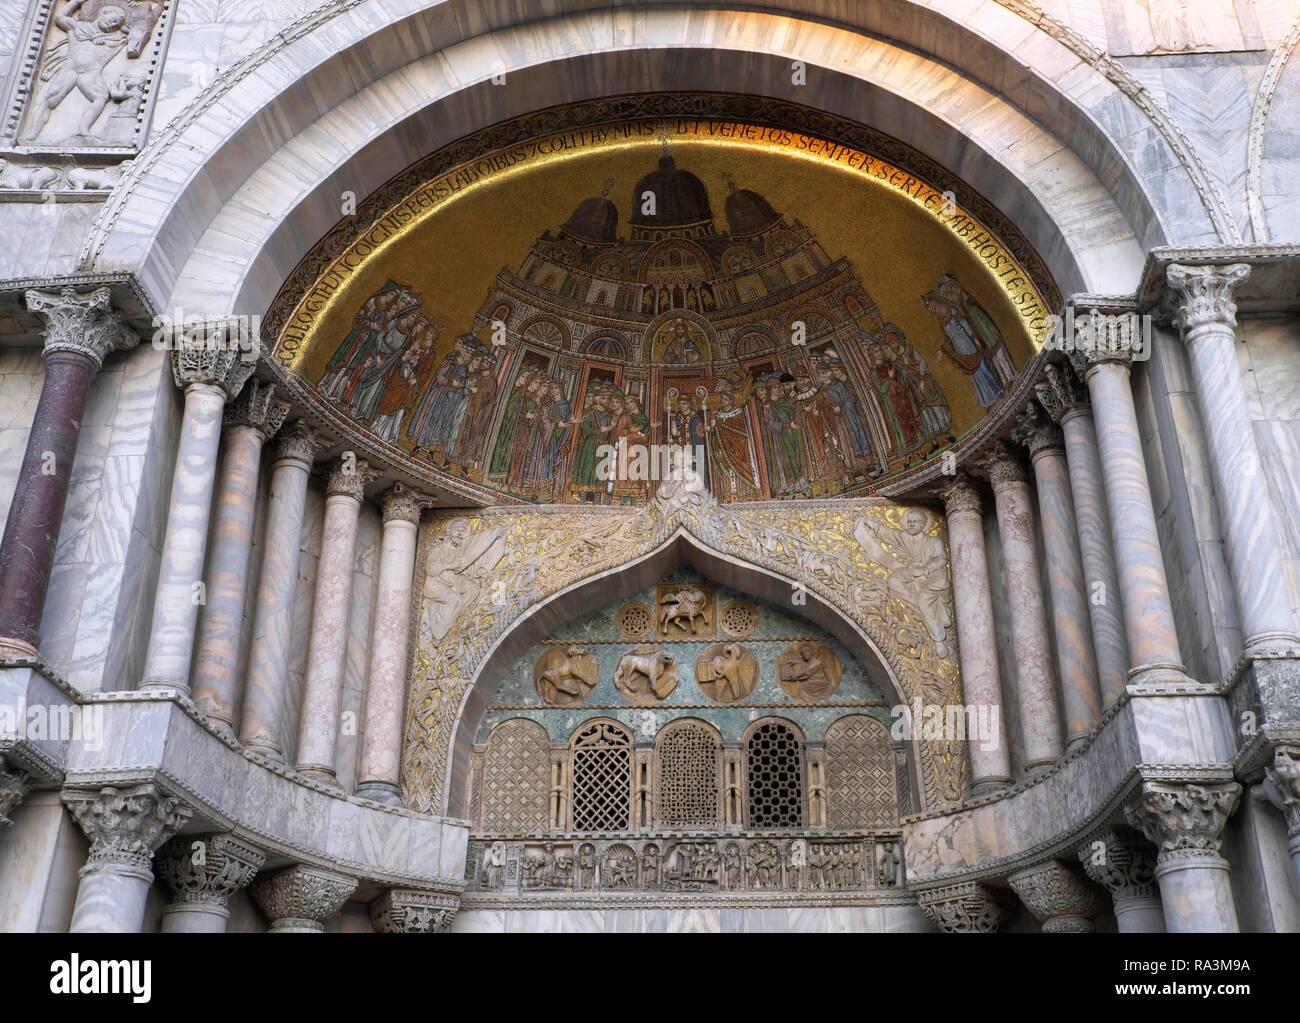 Portal de entrada con mosaico artístico, la Catedral de San Marcos, la basílica de San Marcos, la Plaza de San Marcos, la Plaza de San Marco, Venecia Foto de stock